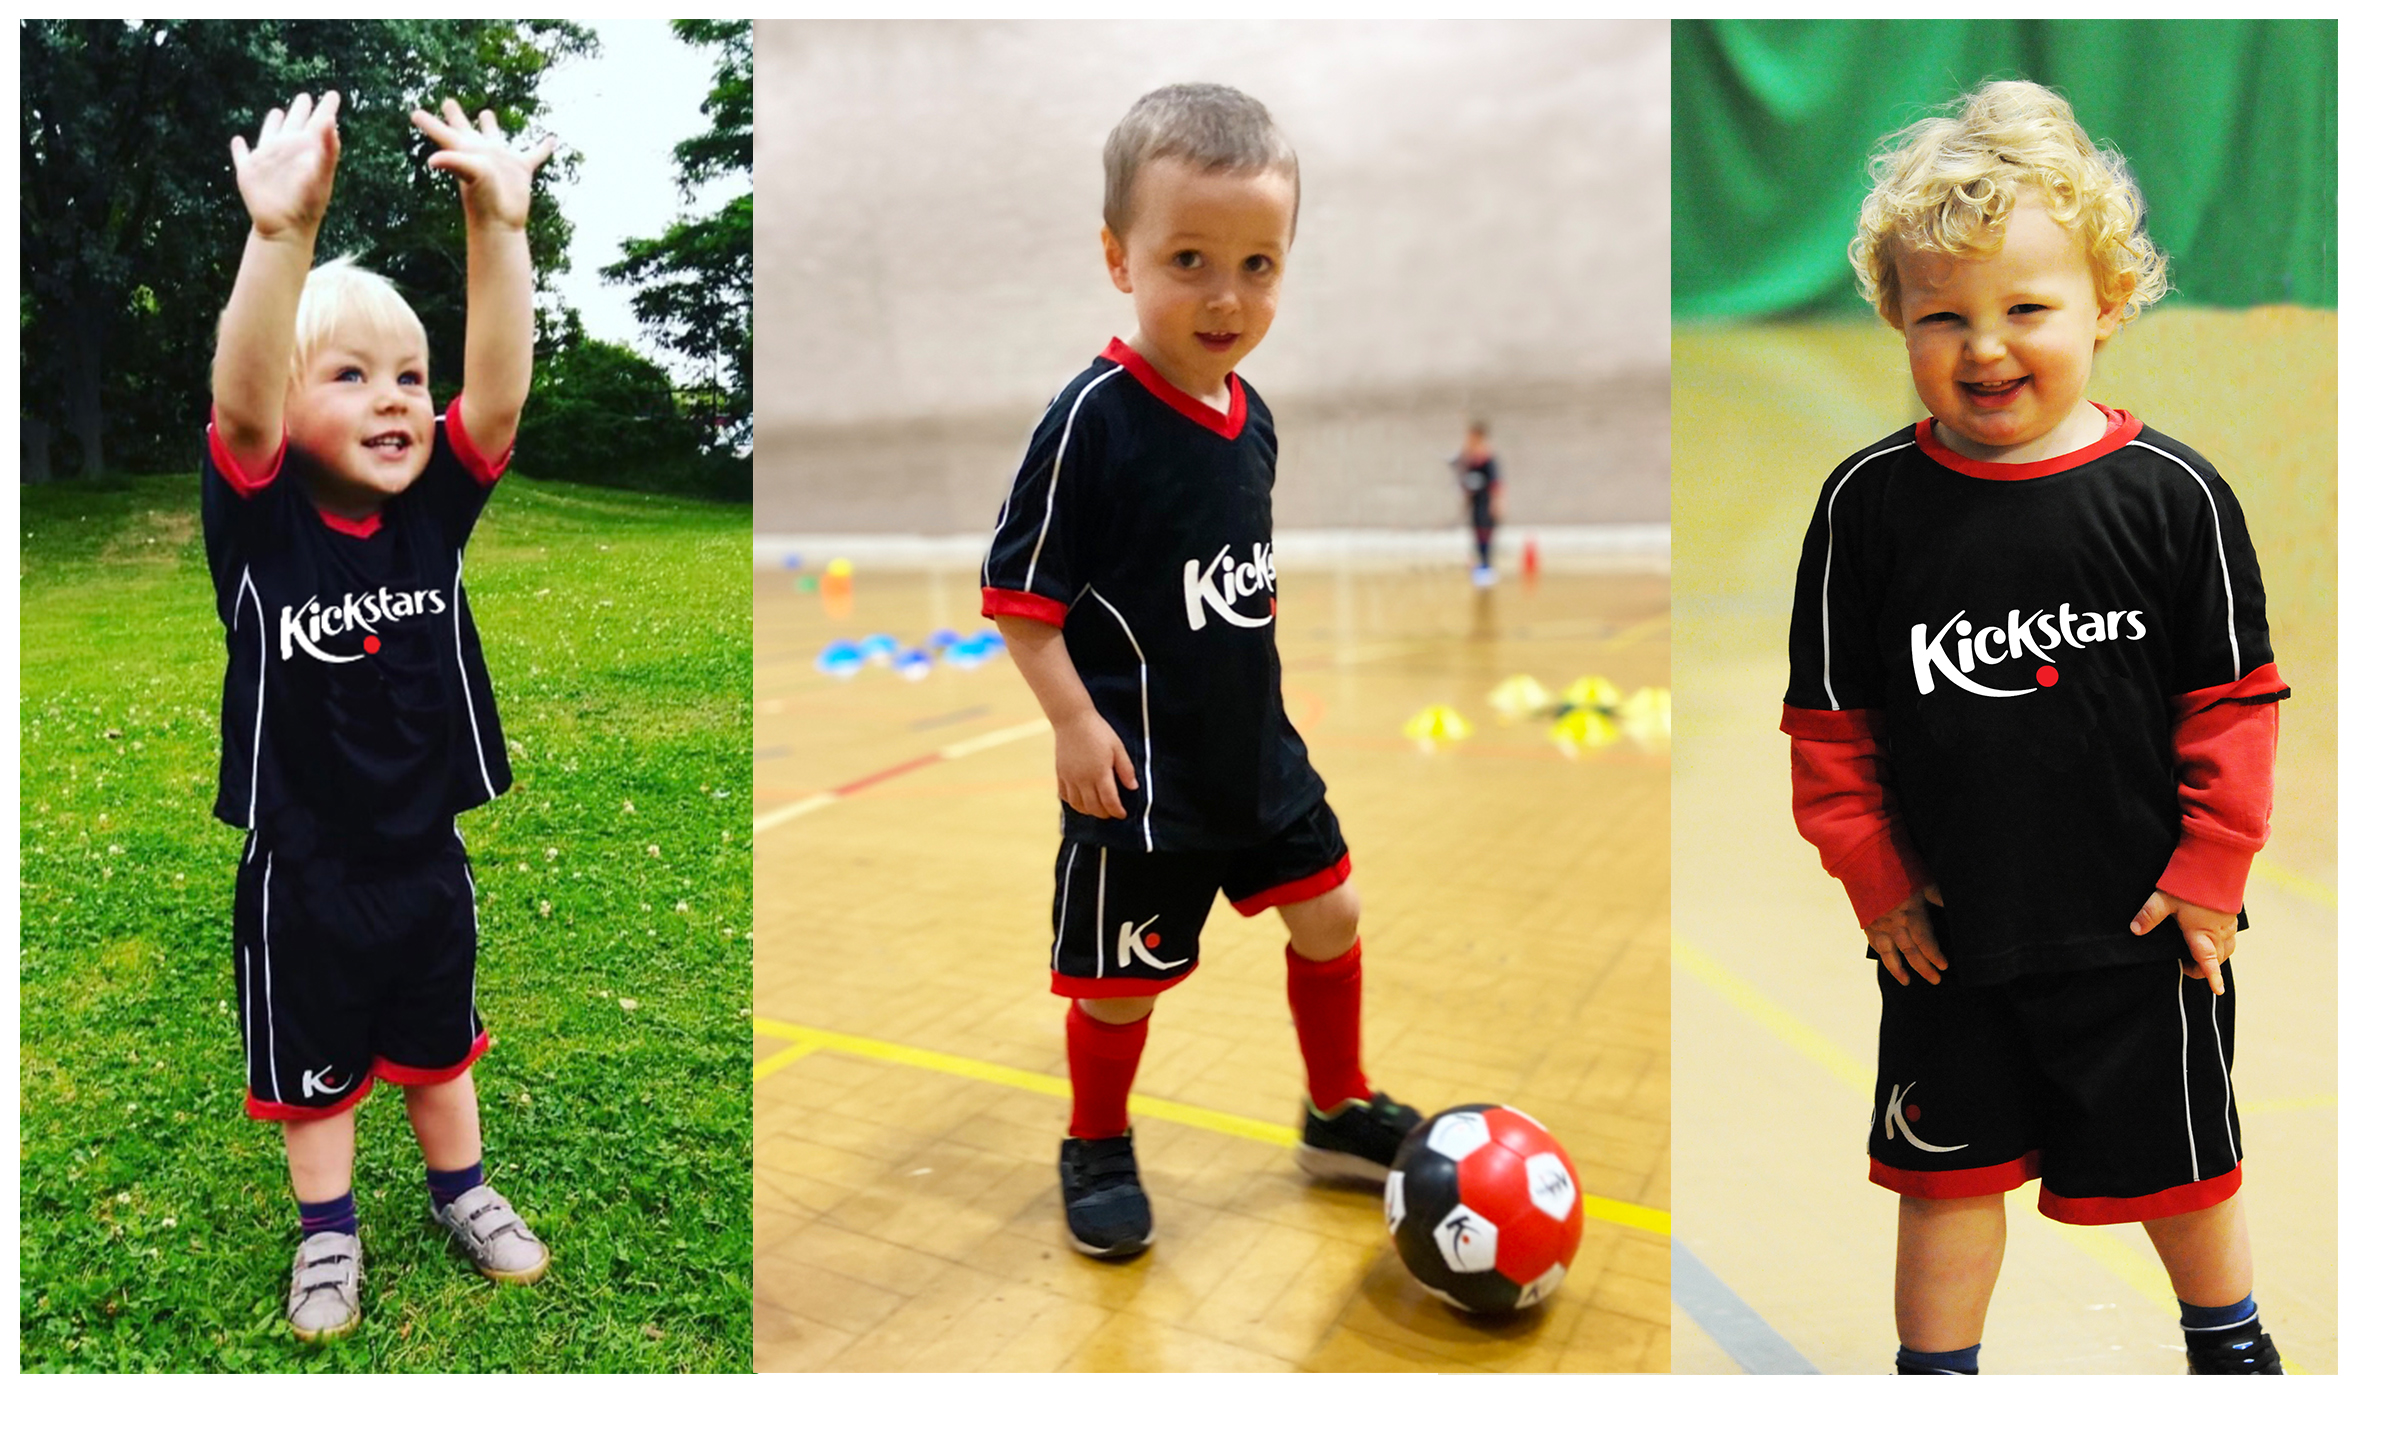 three children playing football black kits Kickstars ball kicking on grass in sports hall